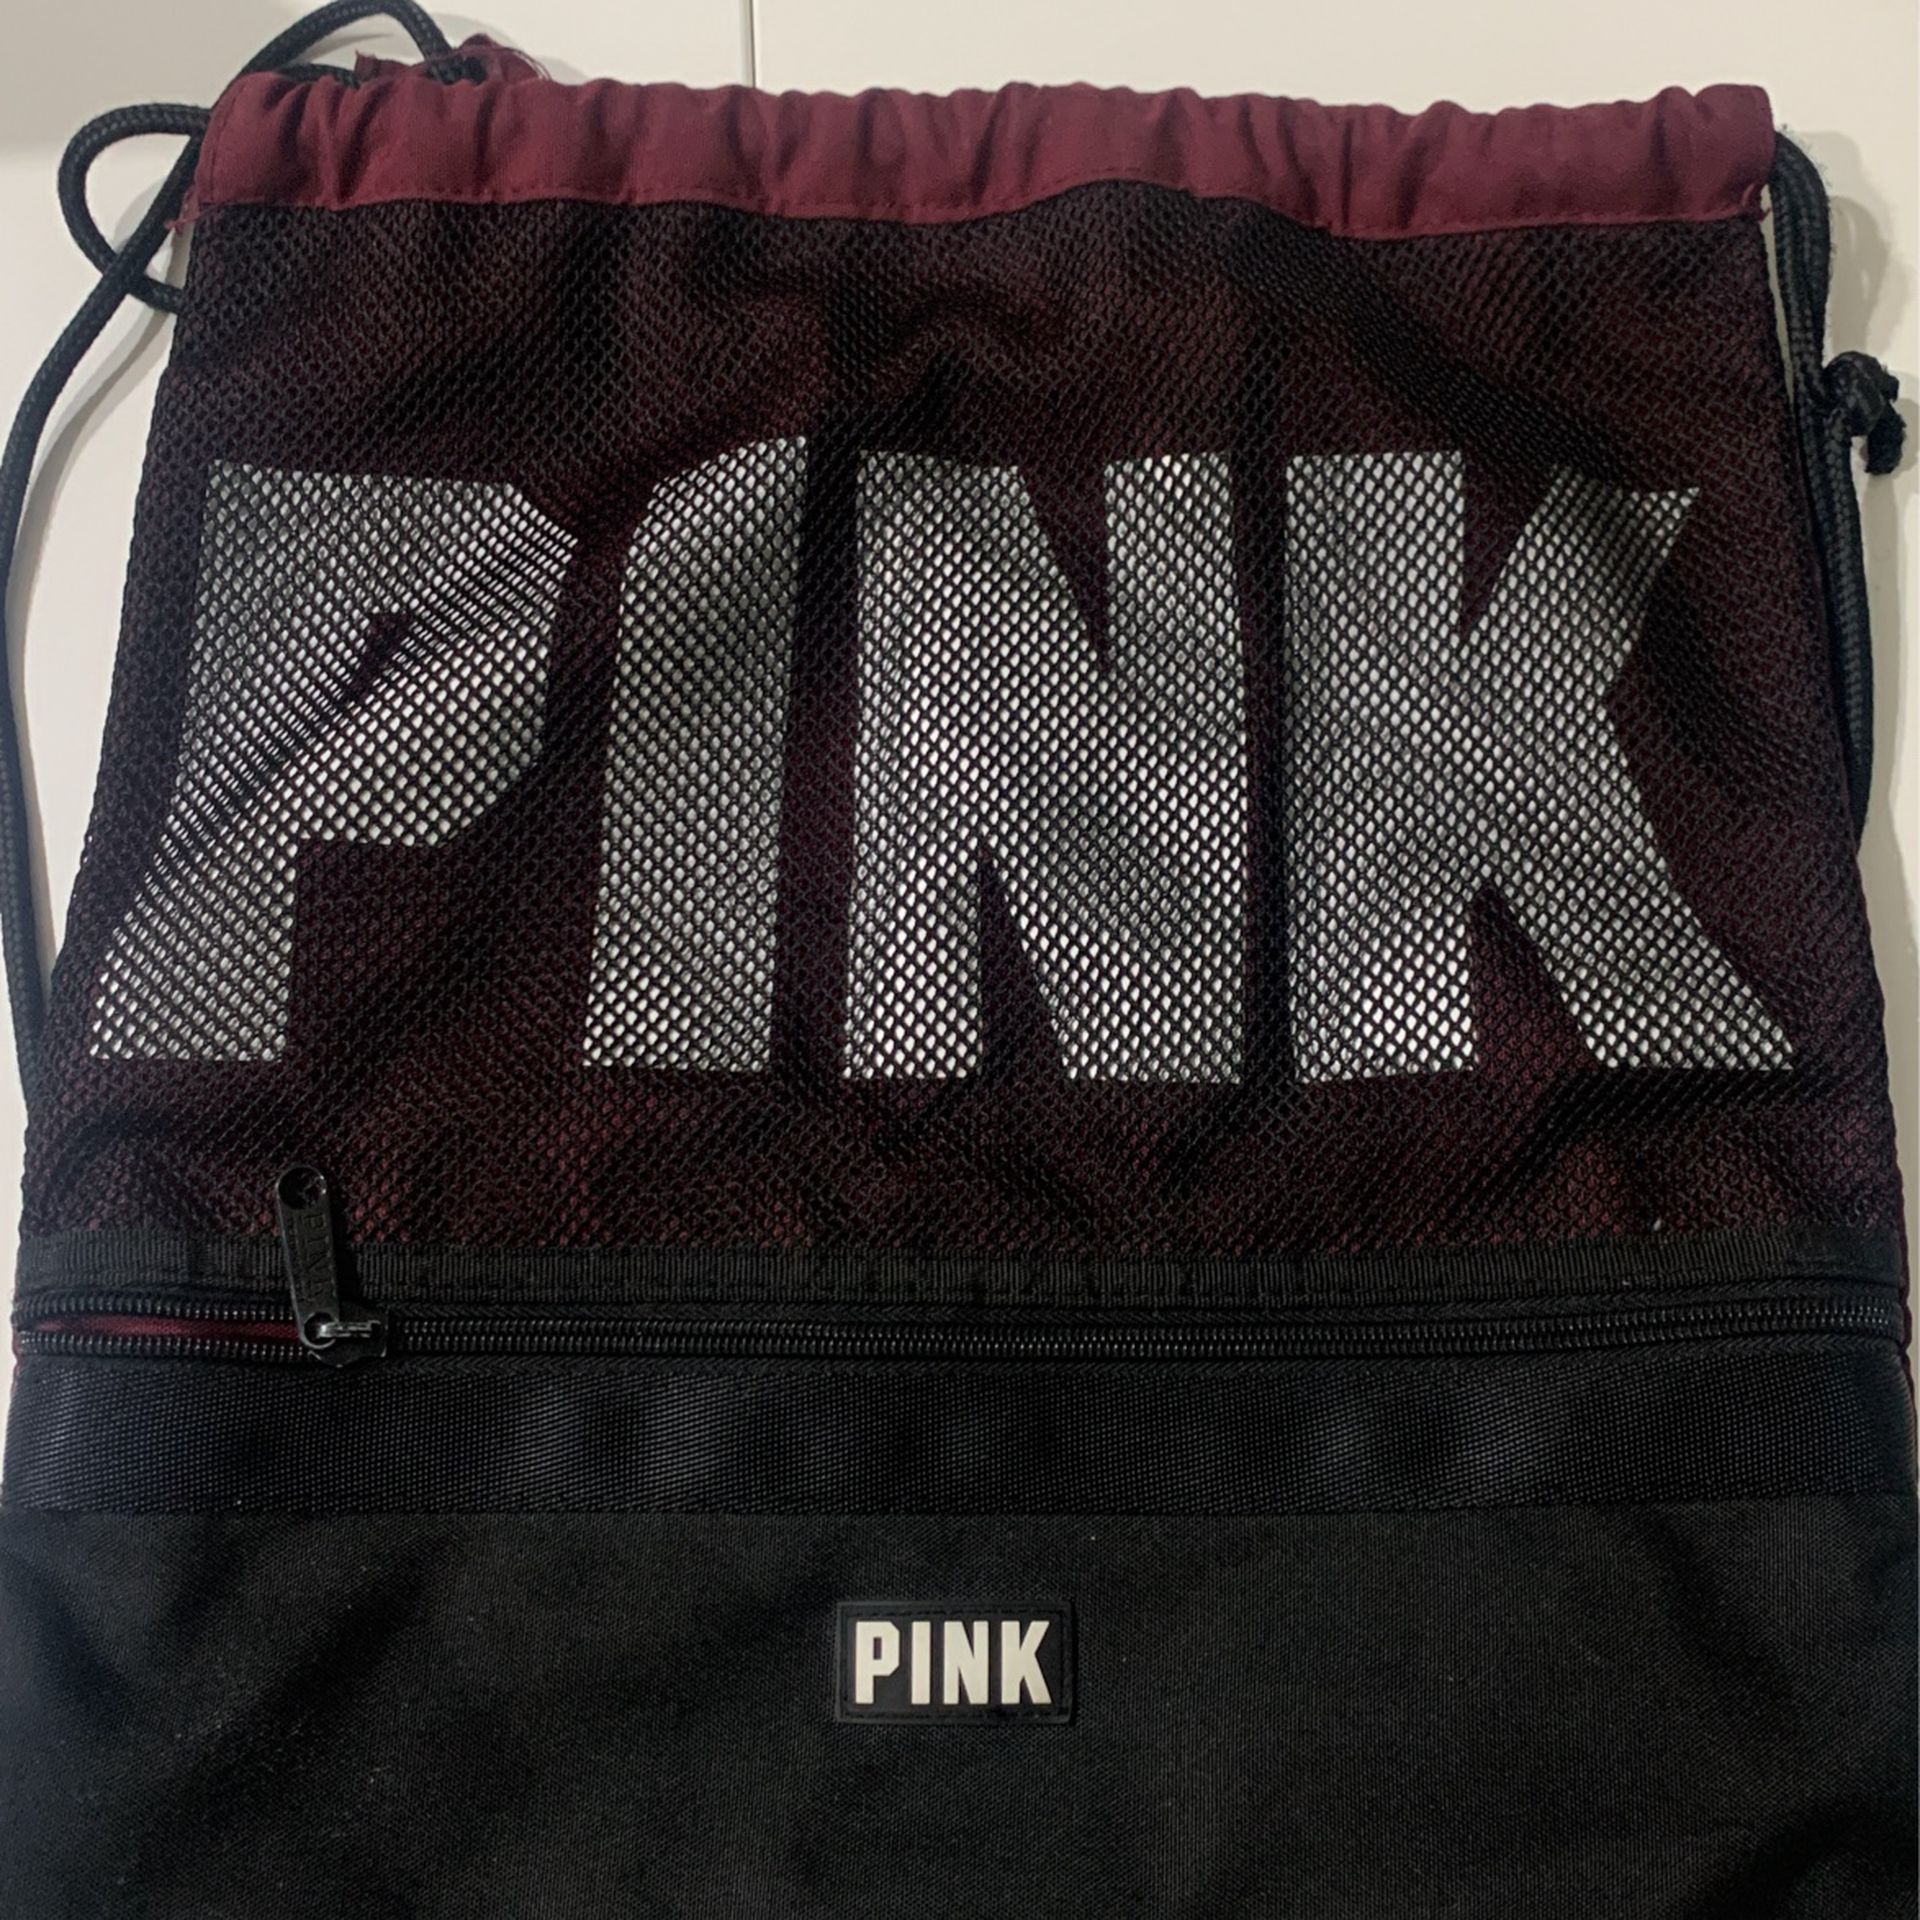 Pink Maroon bag